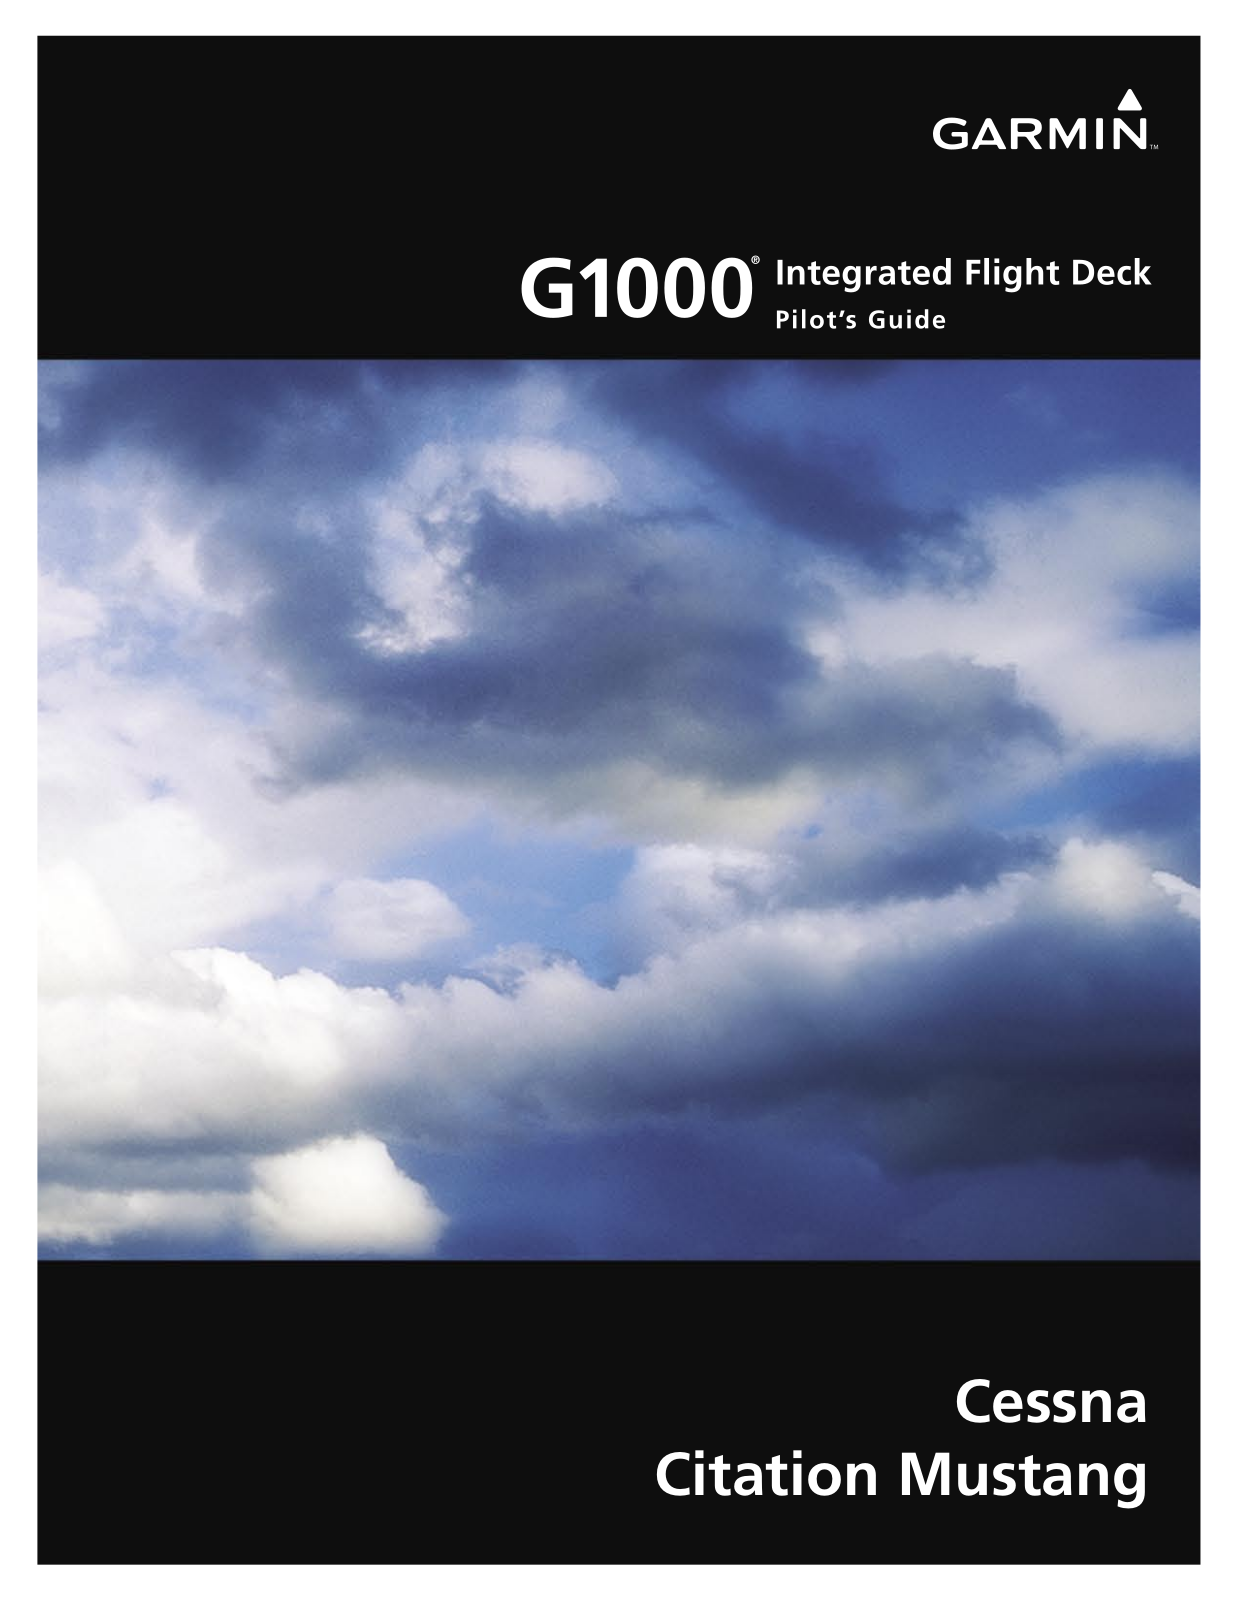 Garmin G1000 Integrated Flight Deck